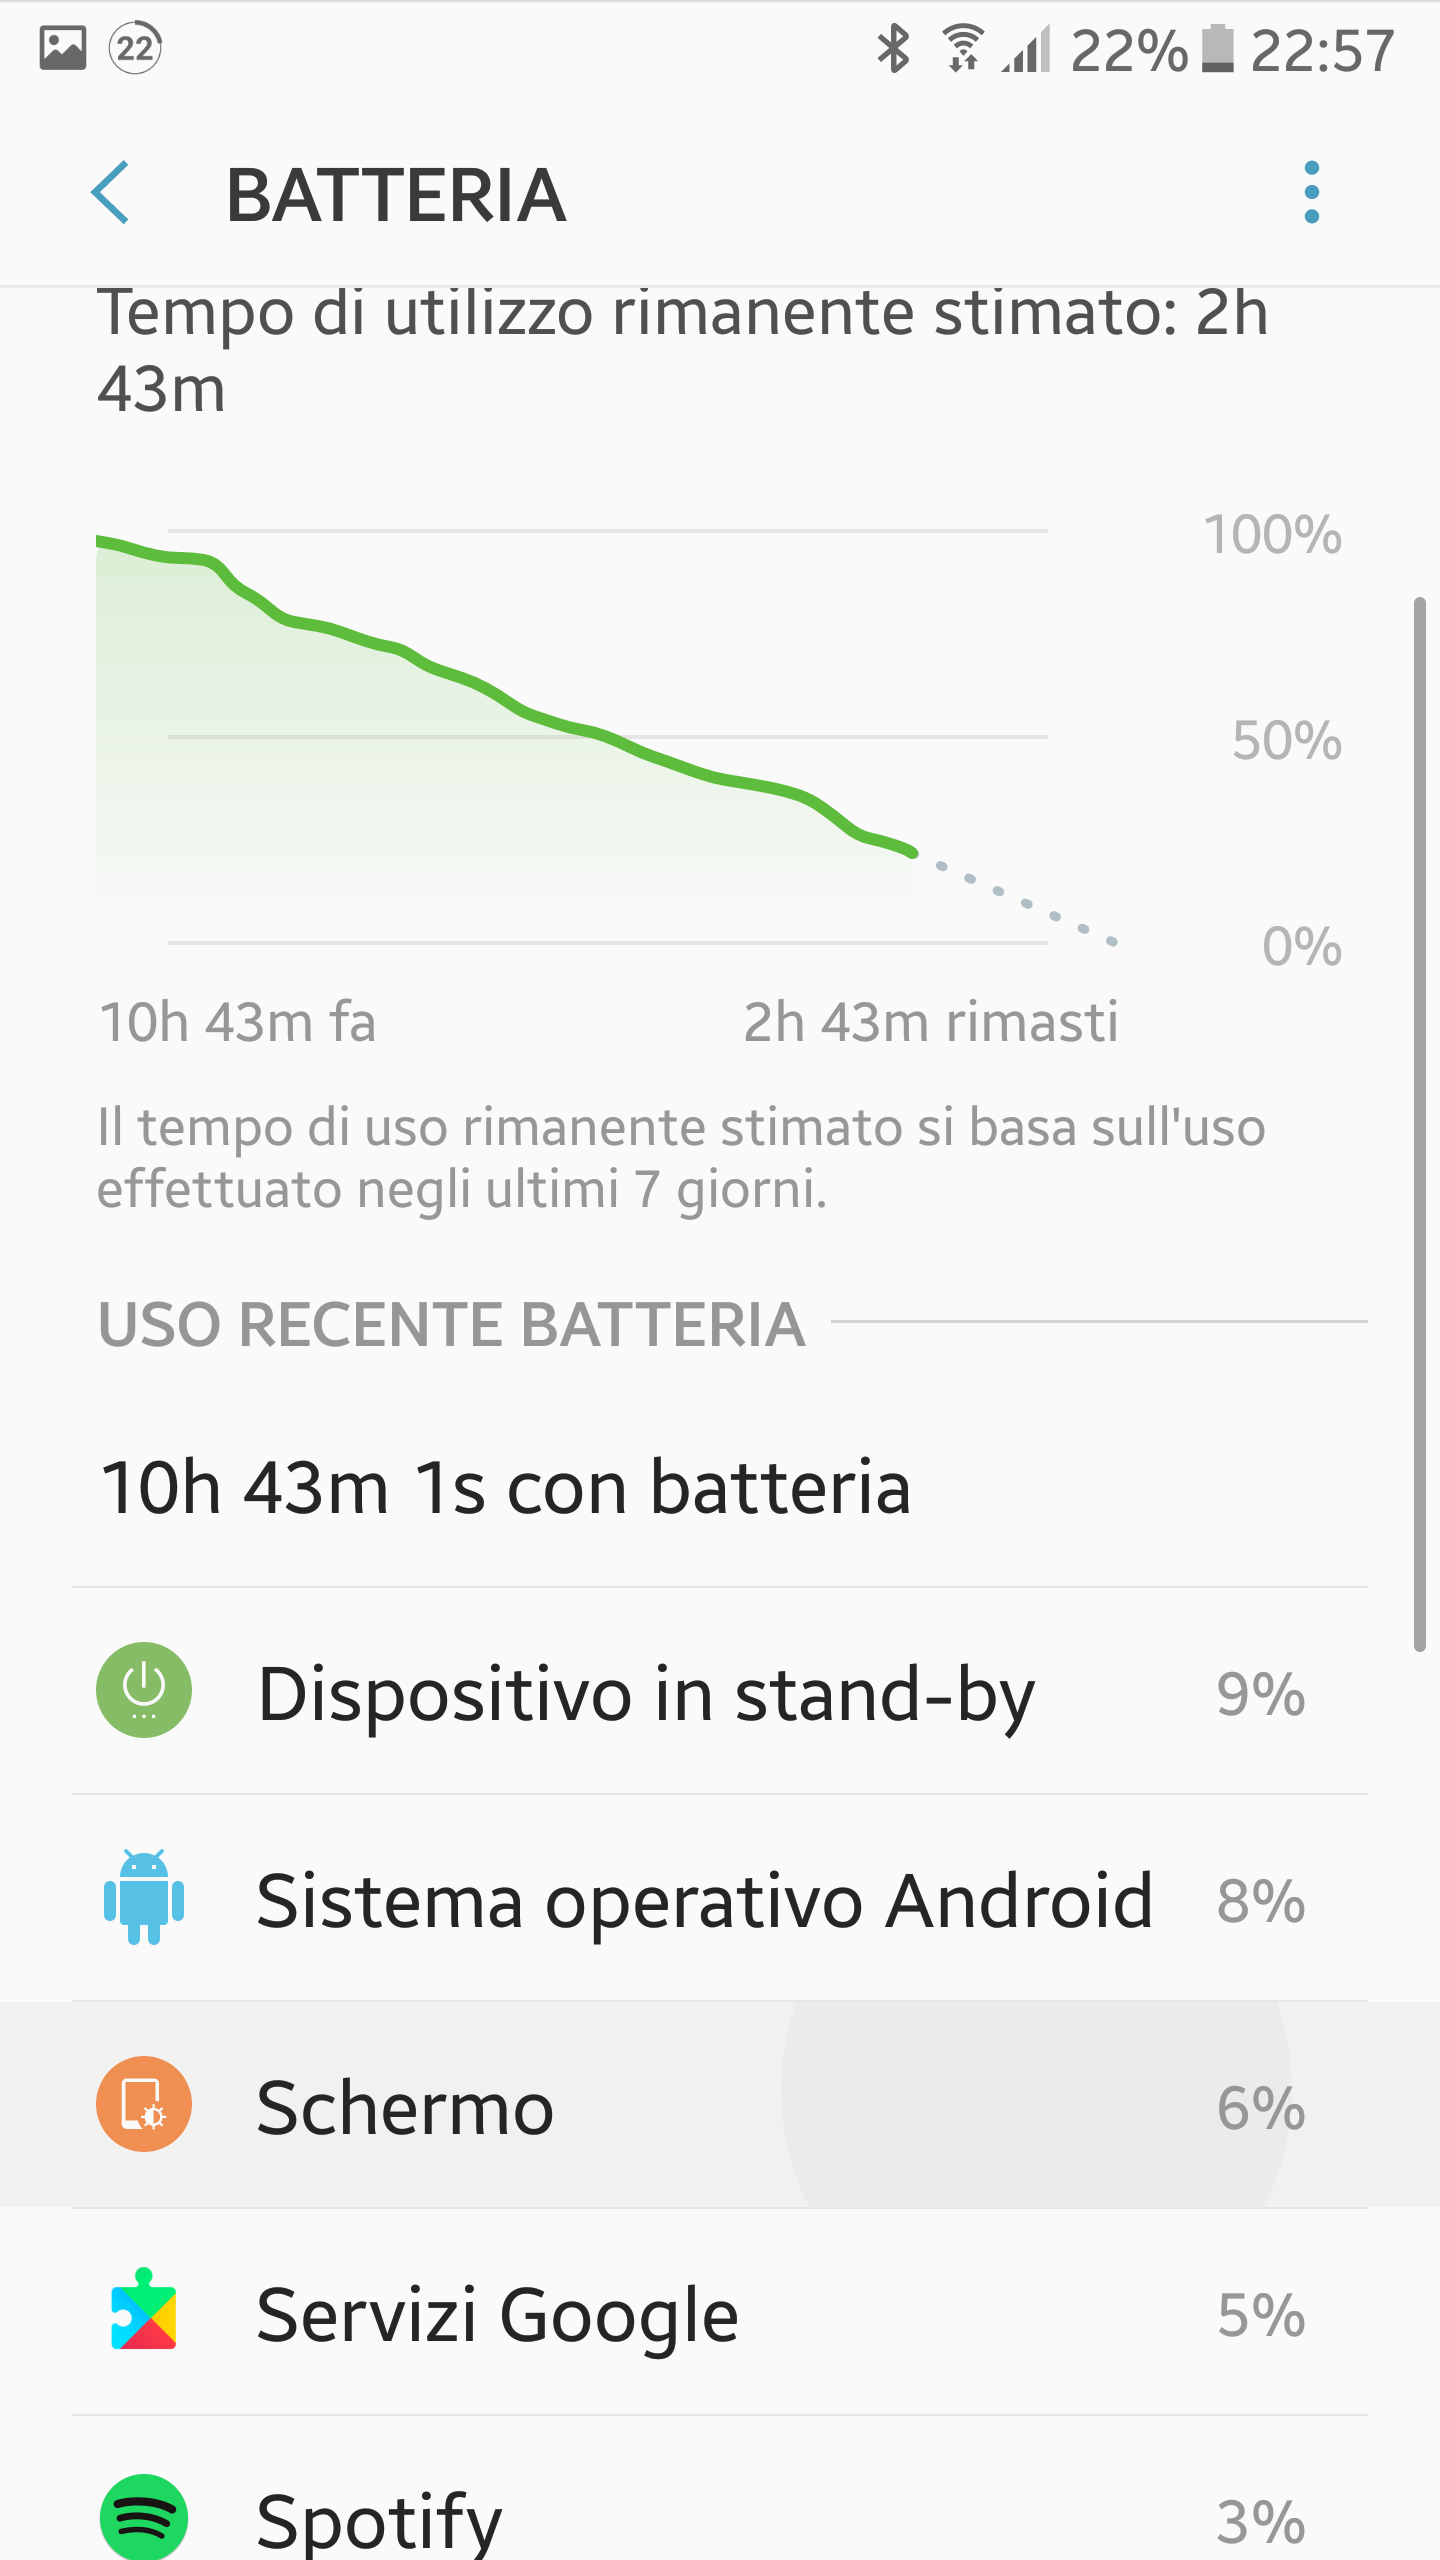 Consumo anomalo batteria a causa di Sistema operativo Android dopo ultimi  aggiornamenti - Galaxy S6 - Samsung Community